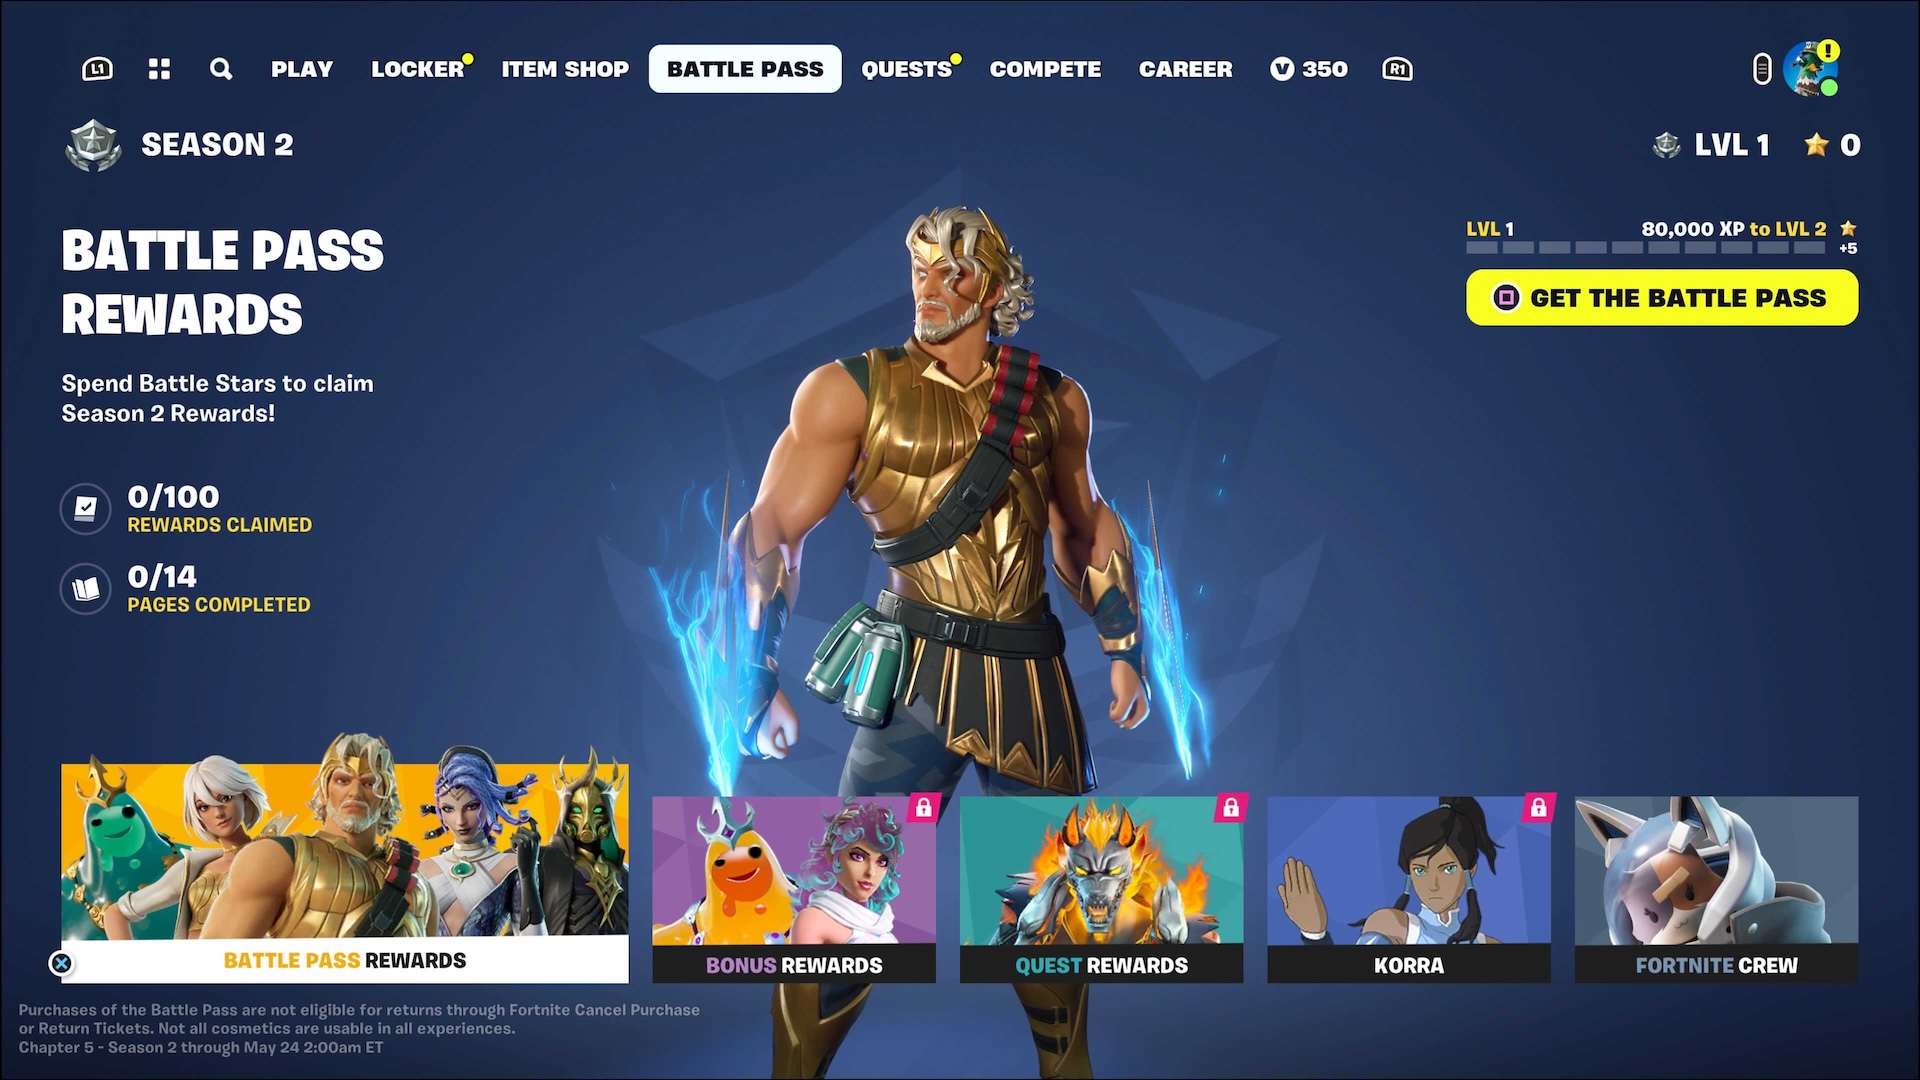 Zeus standing in the Battle Pass screen in Fortnite